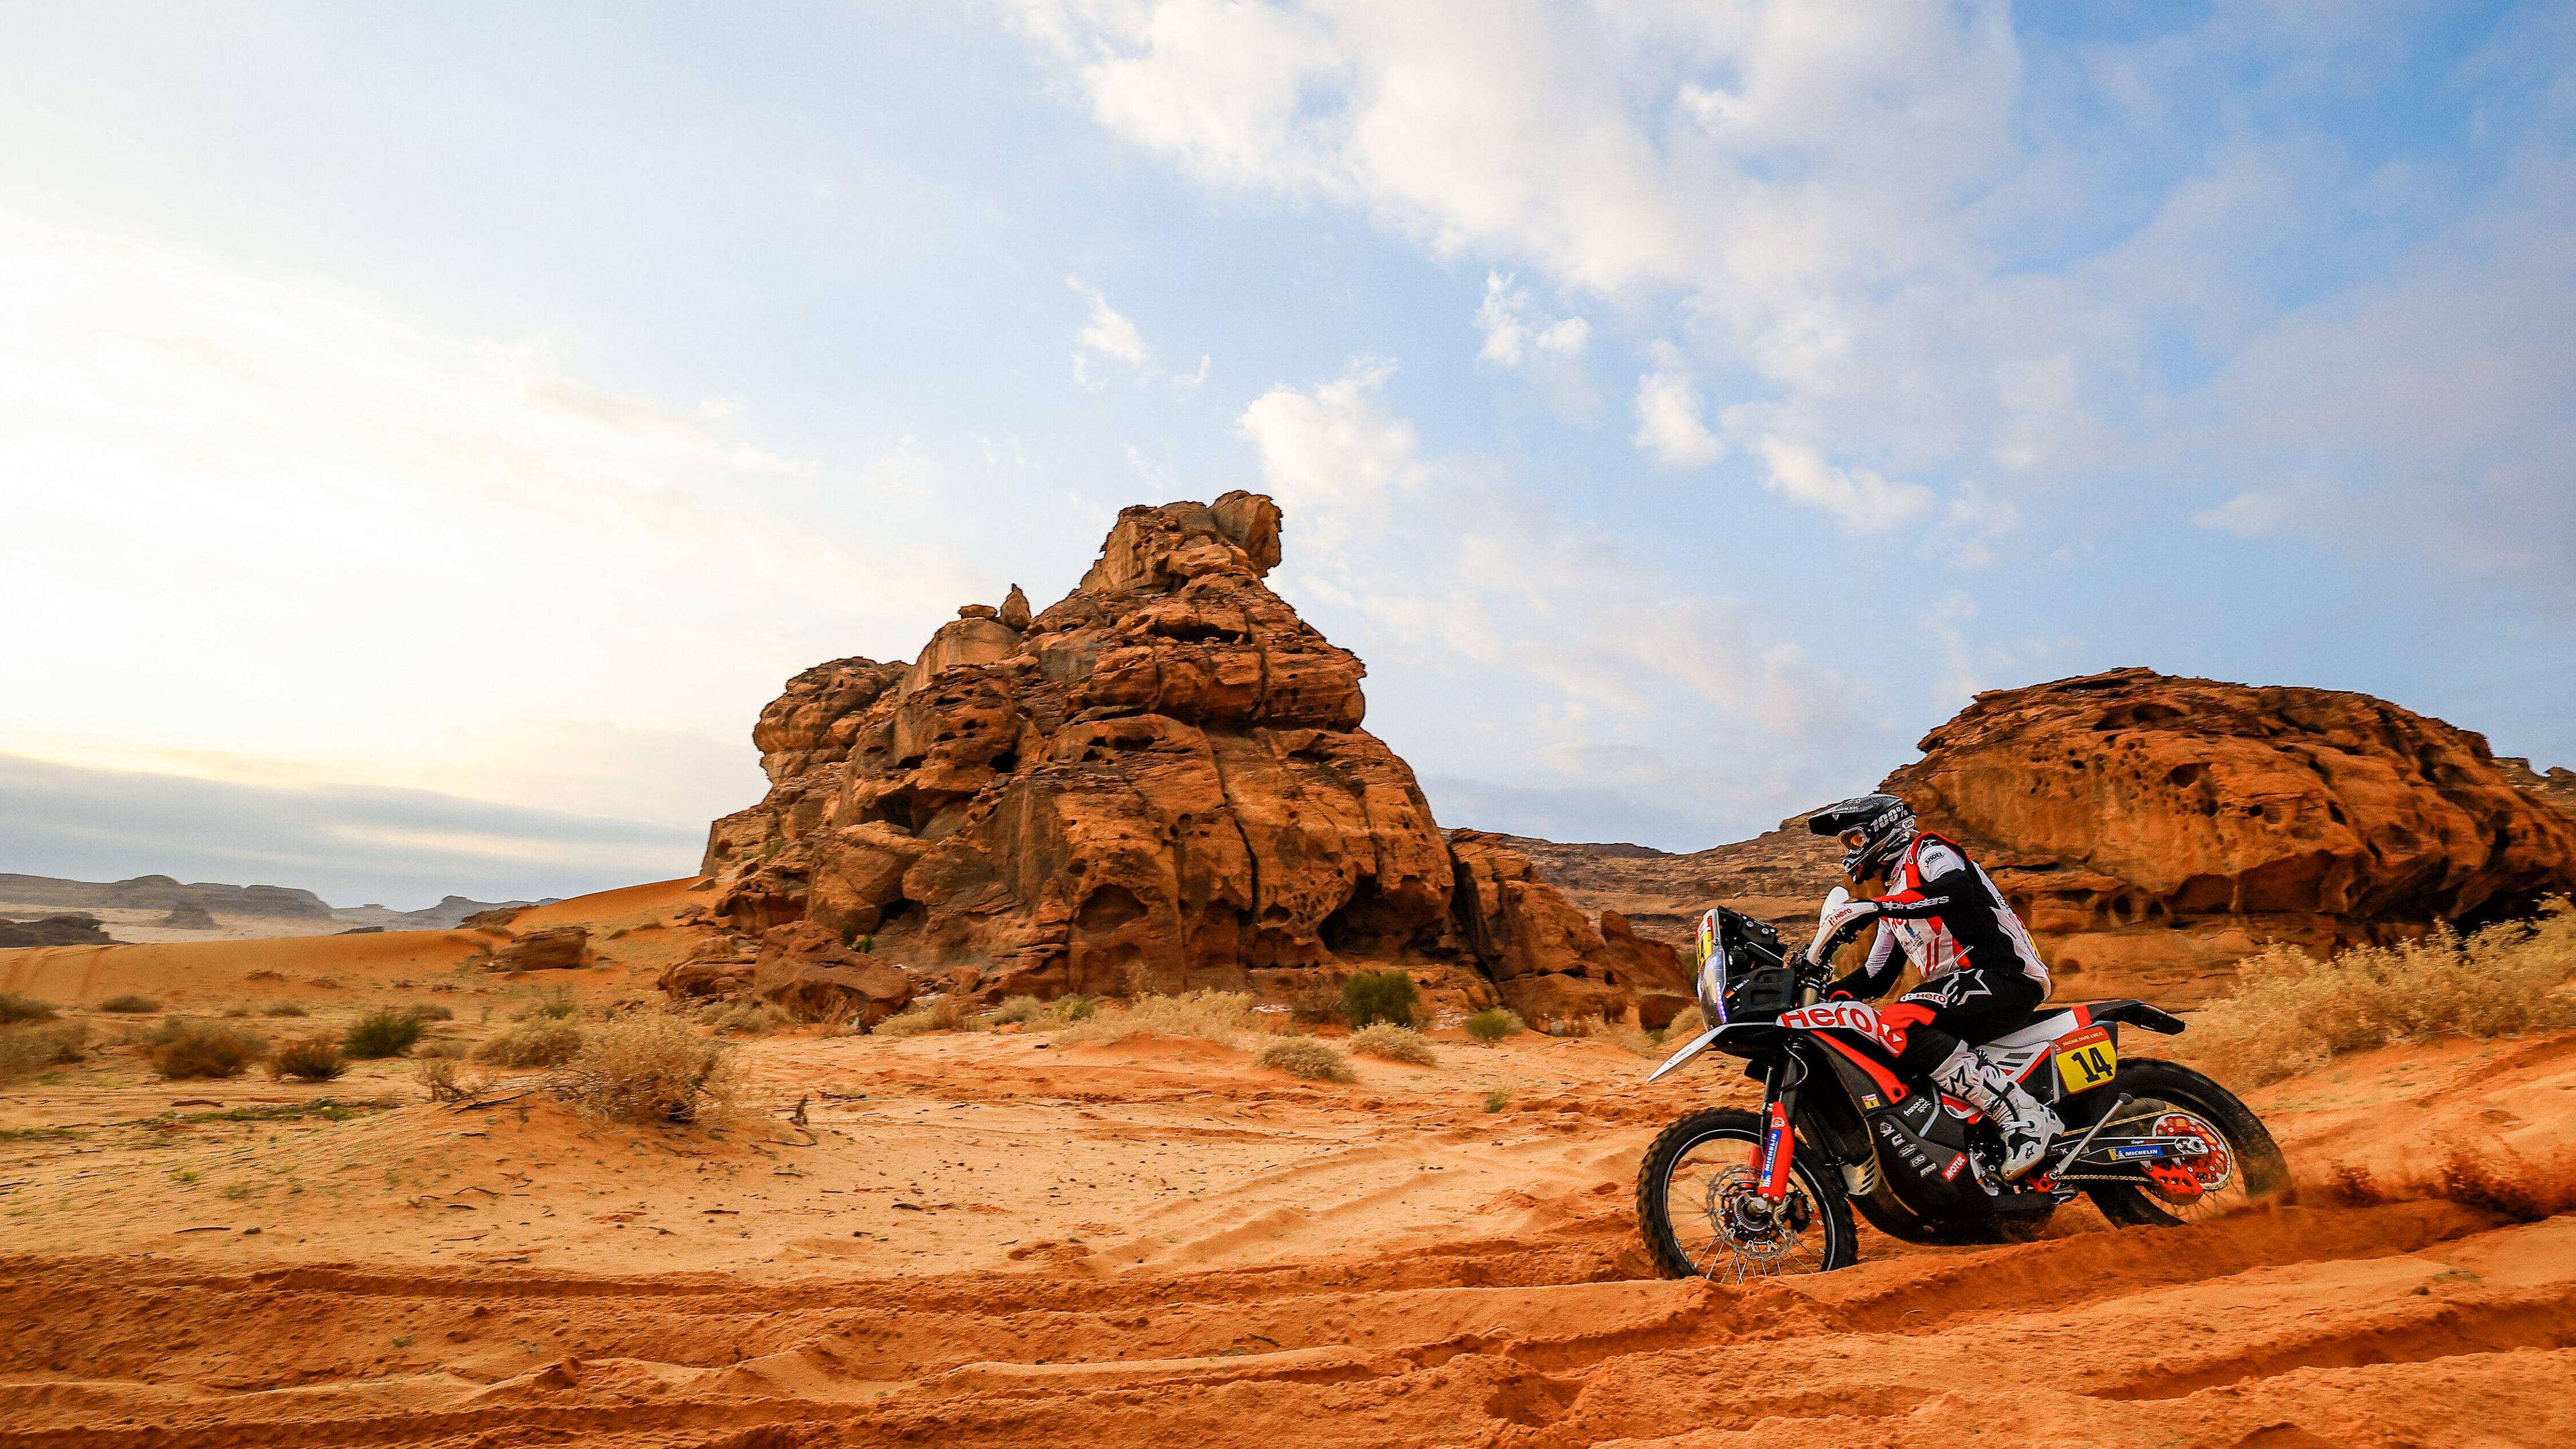 Motorrad-Rennfahrer Sebastian Bühler ist bei der Rallye Dakar im Topfeld der Motorradfahrer dabei